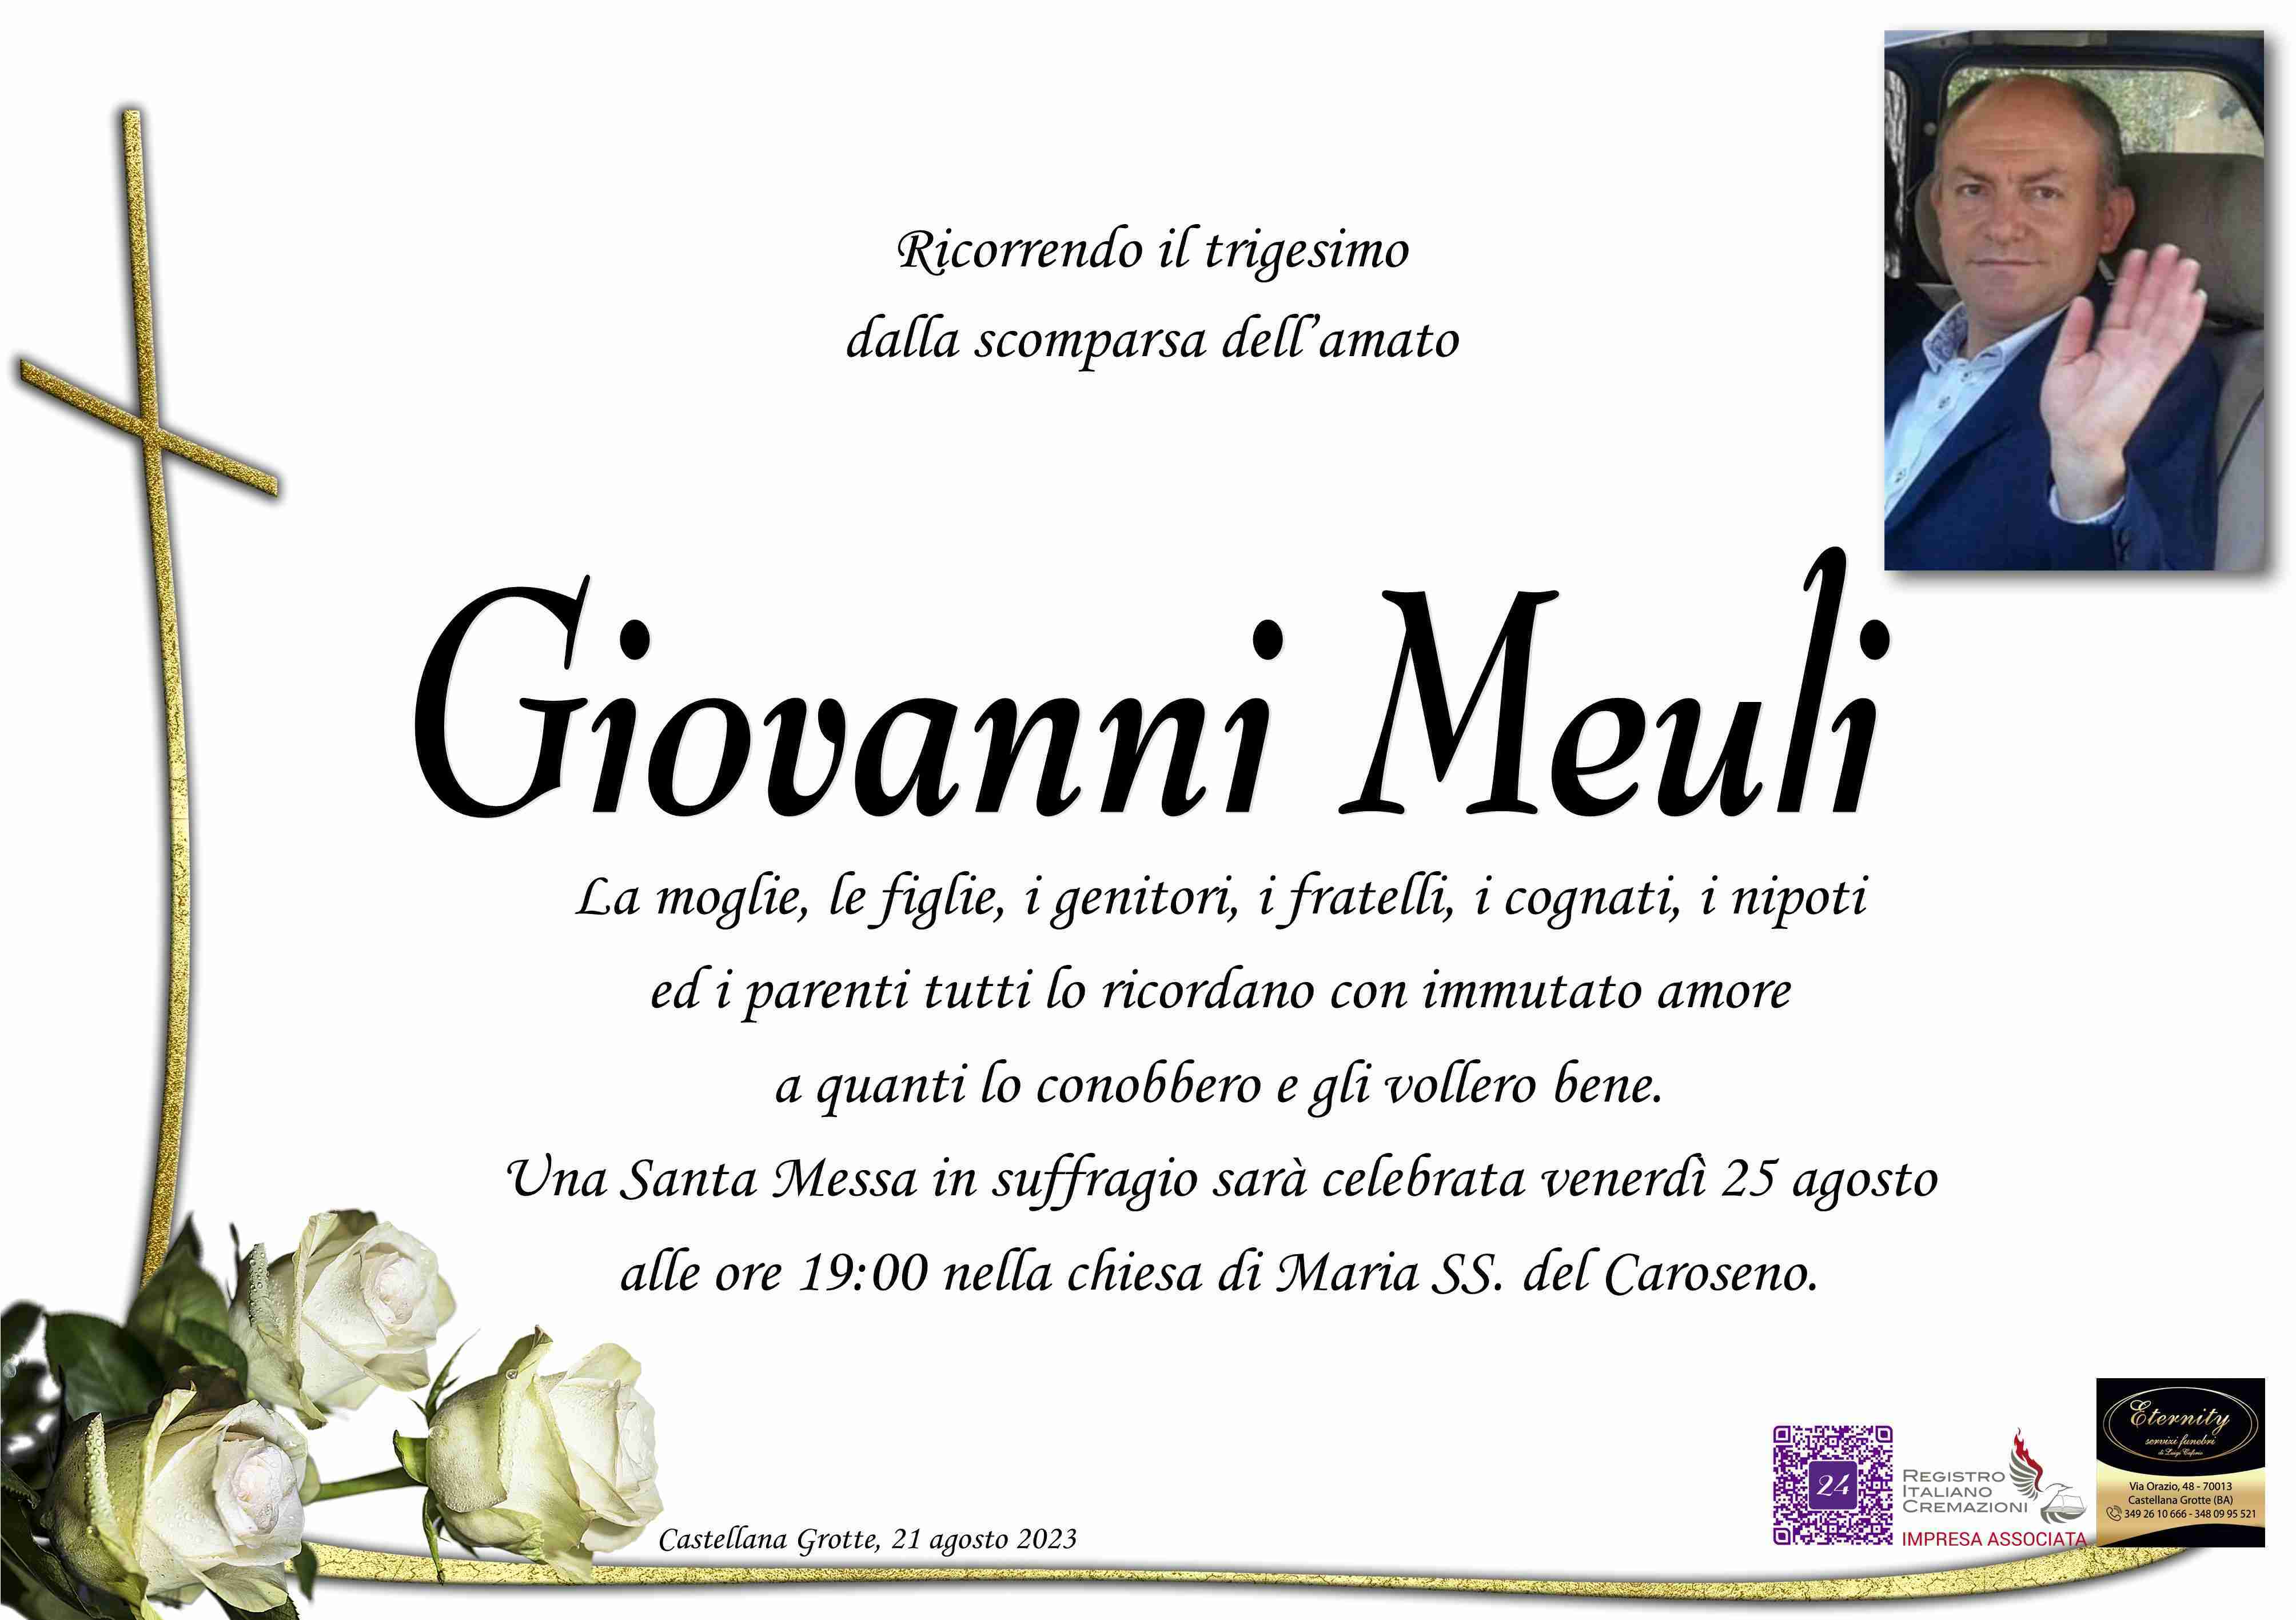 Giovanni Meuli